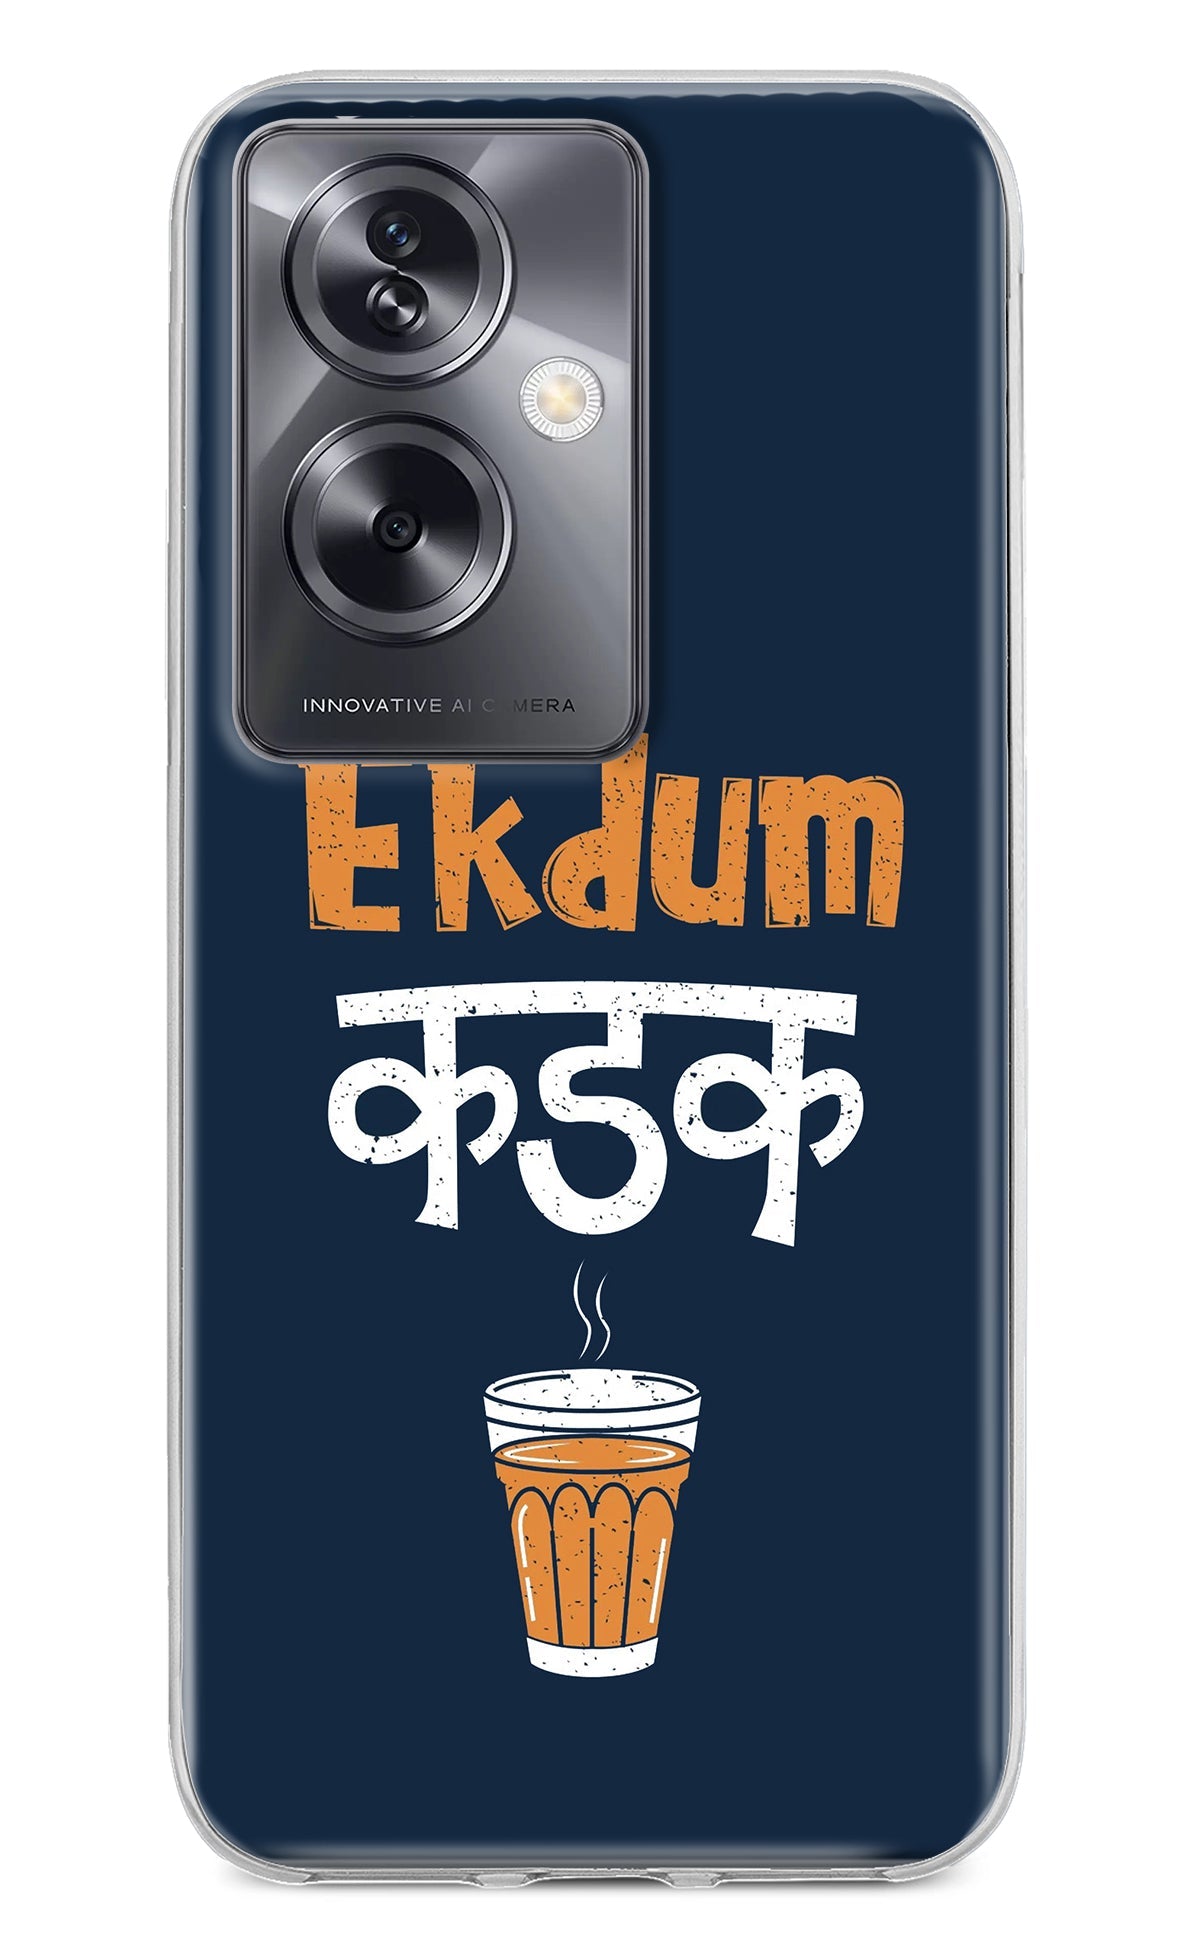 Ekdum Kadak Chai Oppo A79 5G Back Cover